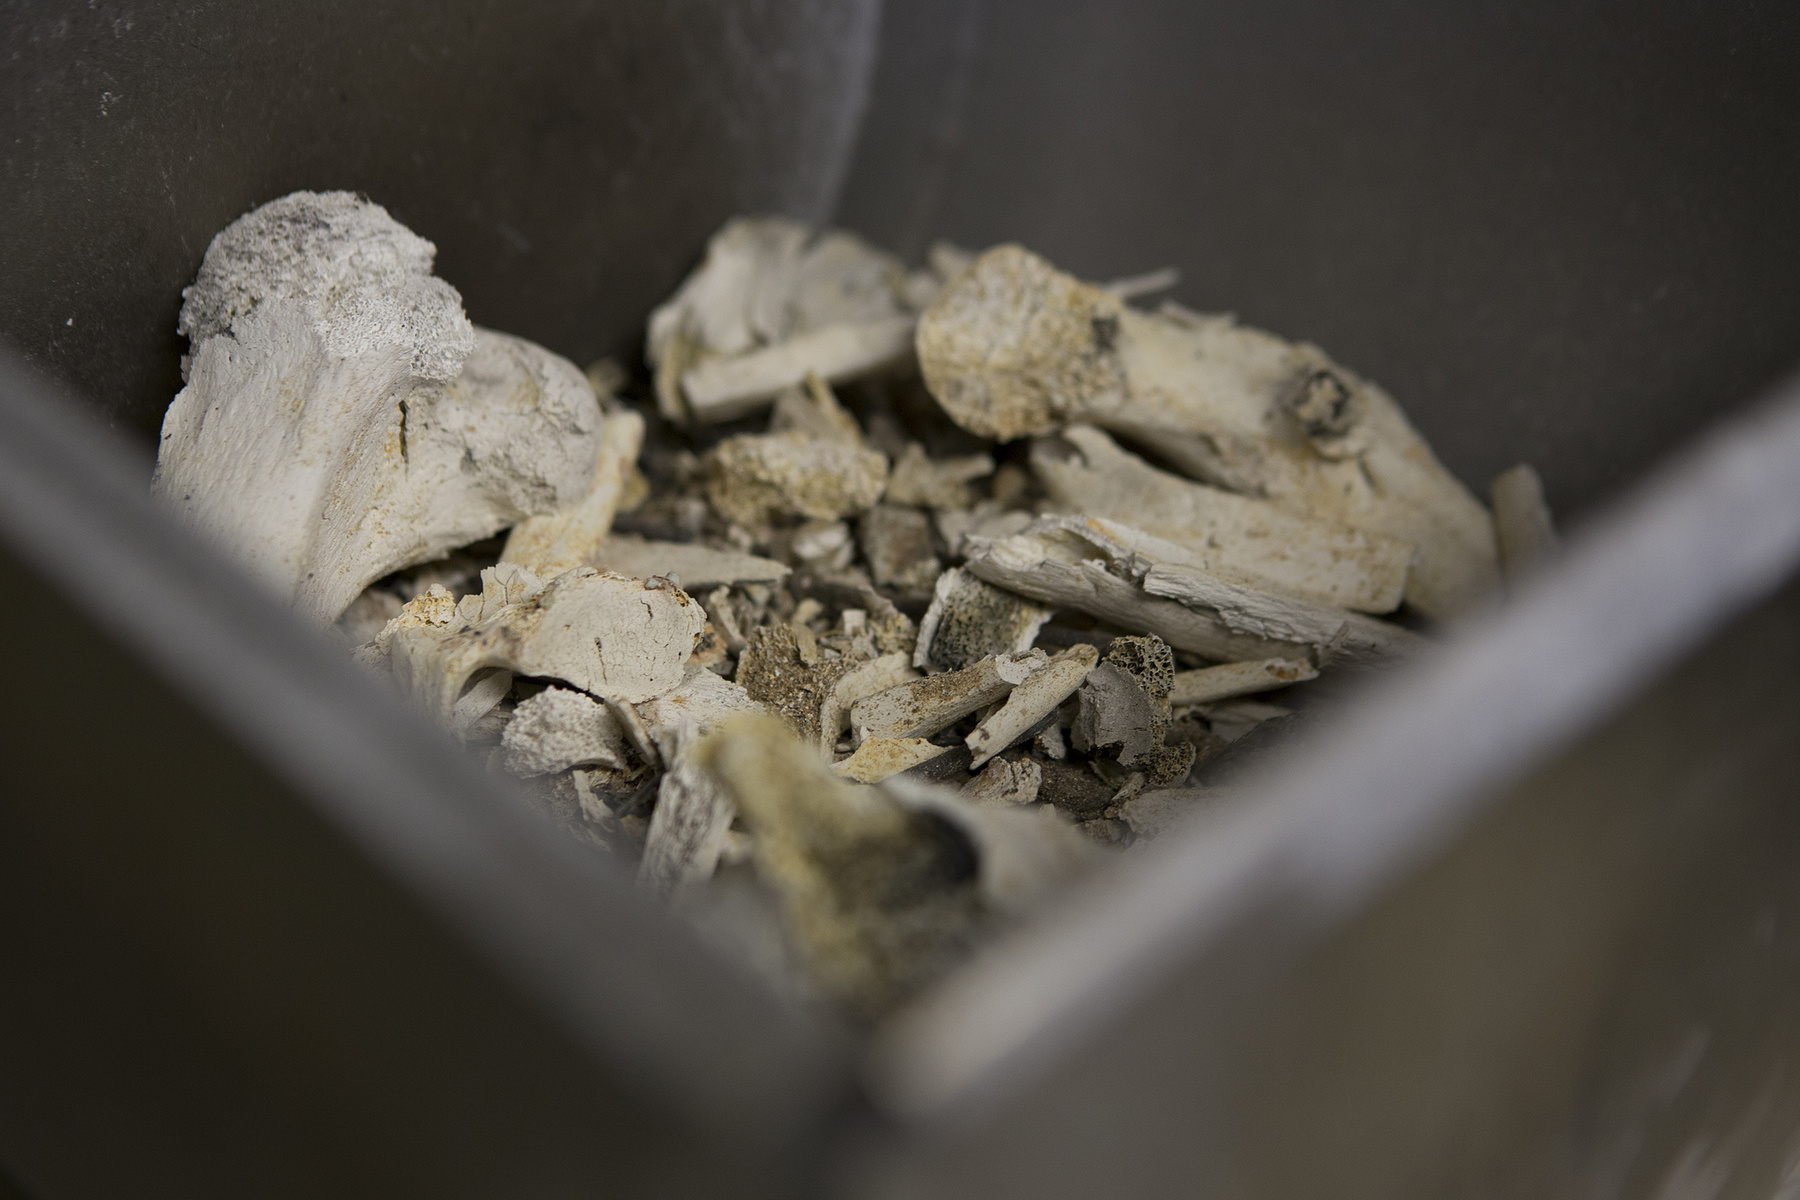 Három liter csont – nagyjából ennyi marad az emberből az 50 perces hamvasztás után. A csontokat ezután őrlik finom hamuvá, mielőtt az urnába helyezik.